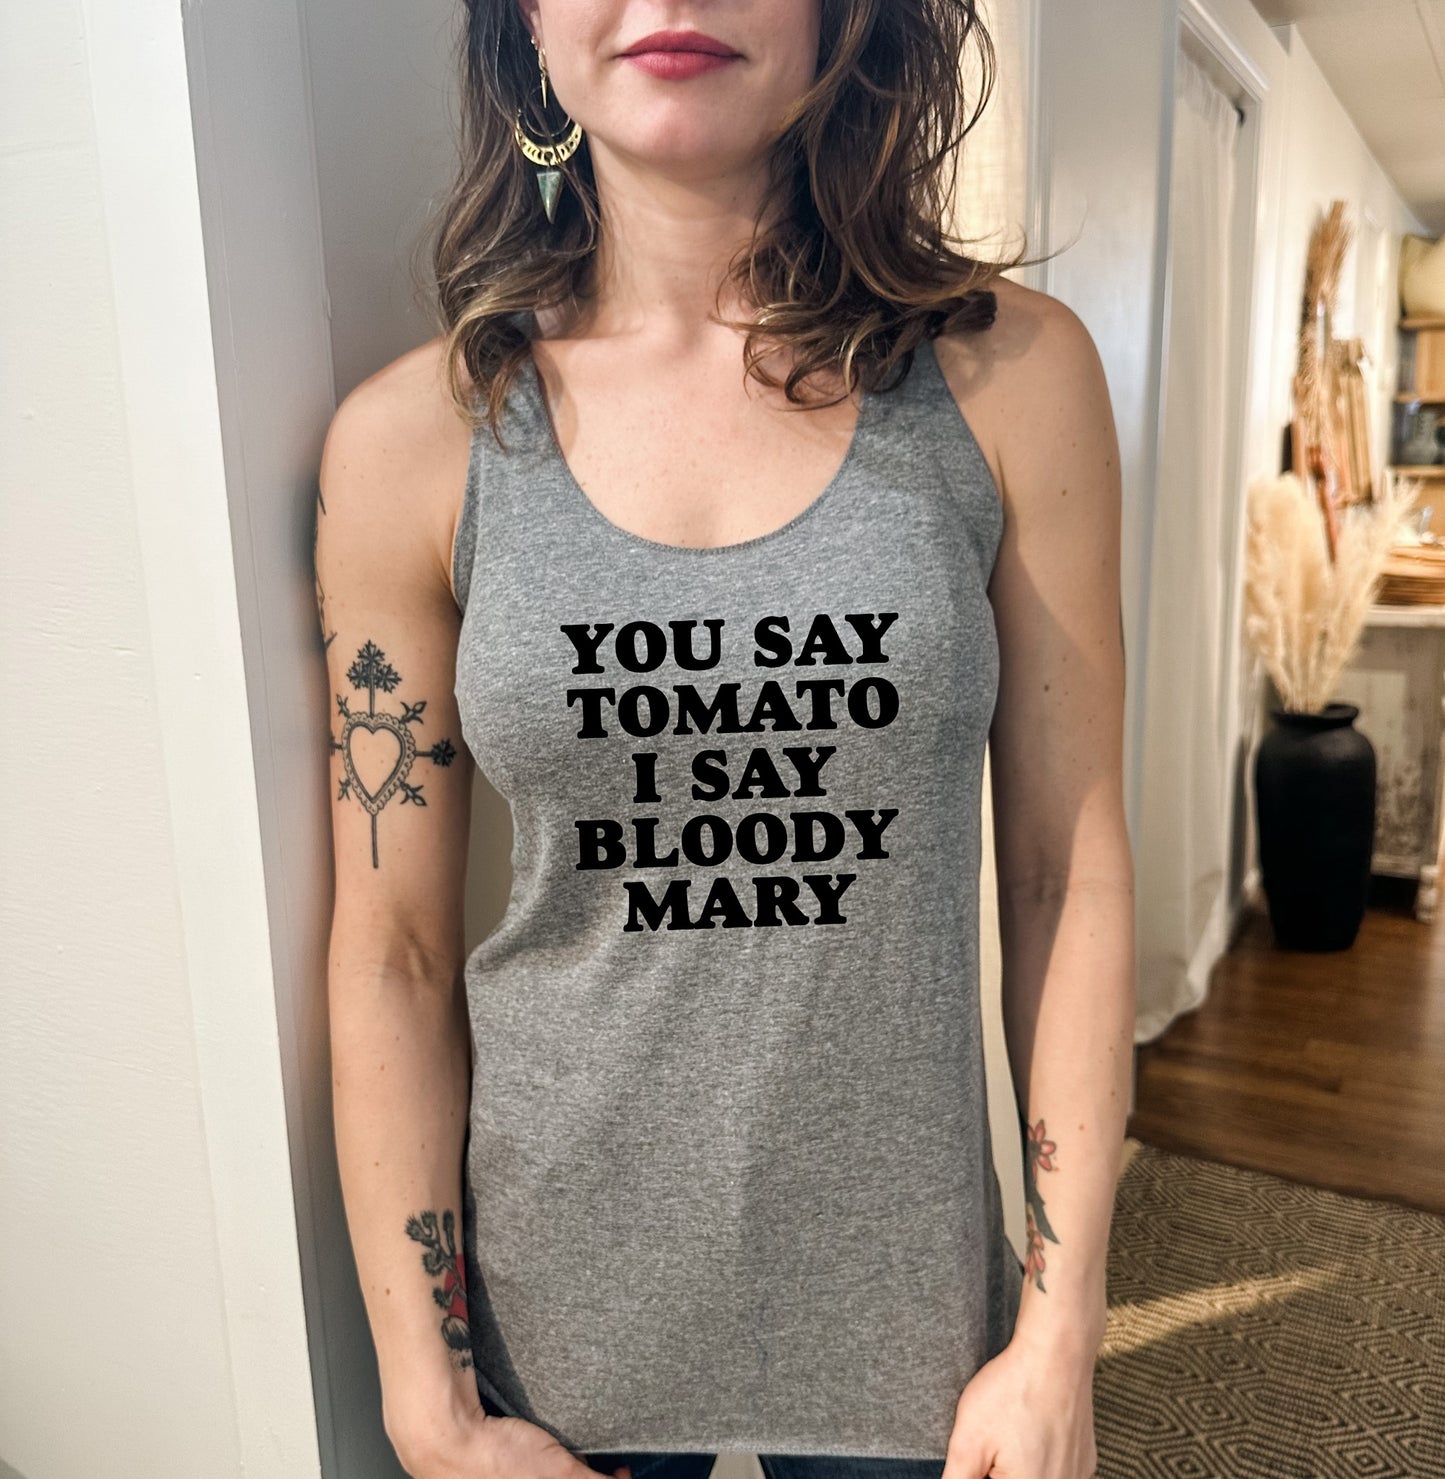 You Say Tomato I Say Bloody Mary - Women's Tank - Heather Gray, Tahiti, or Envy